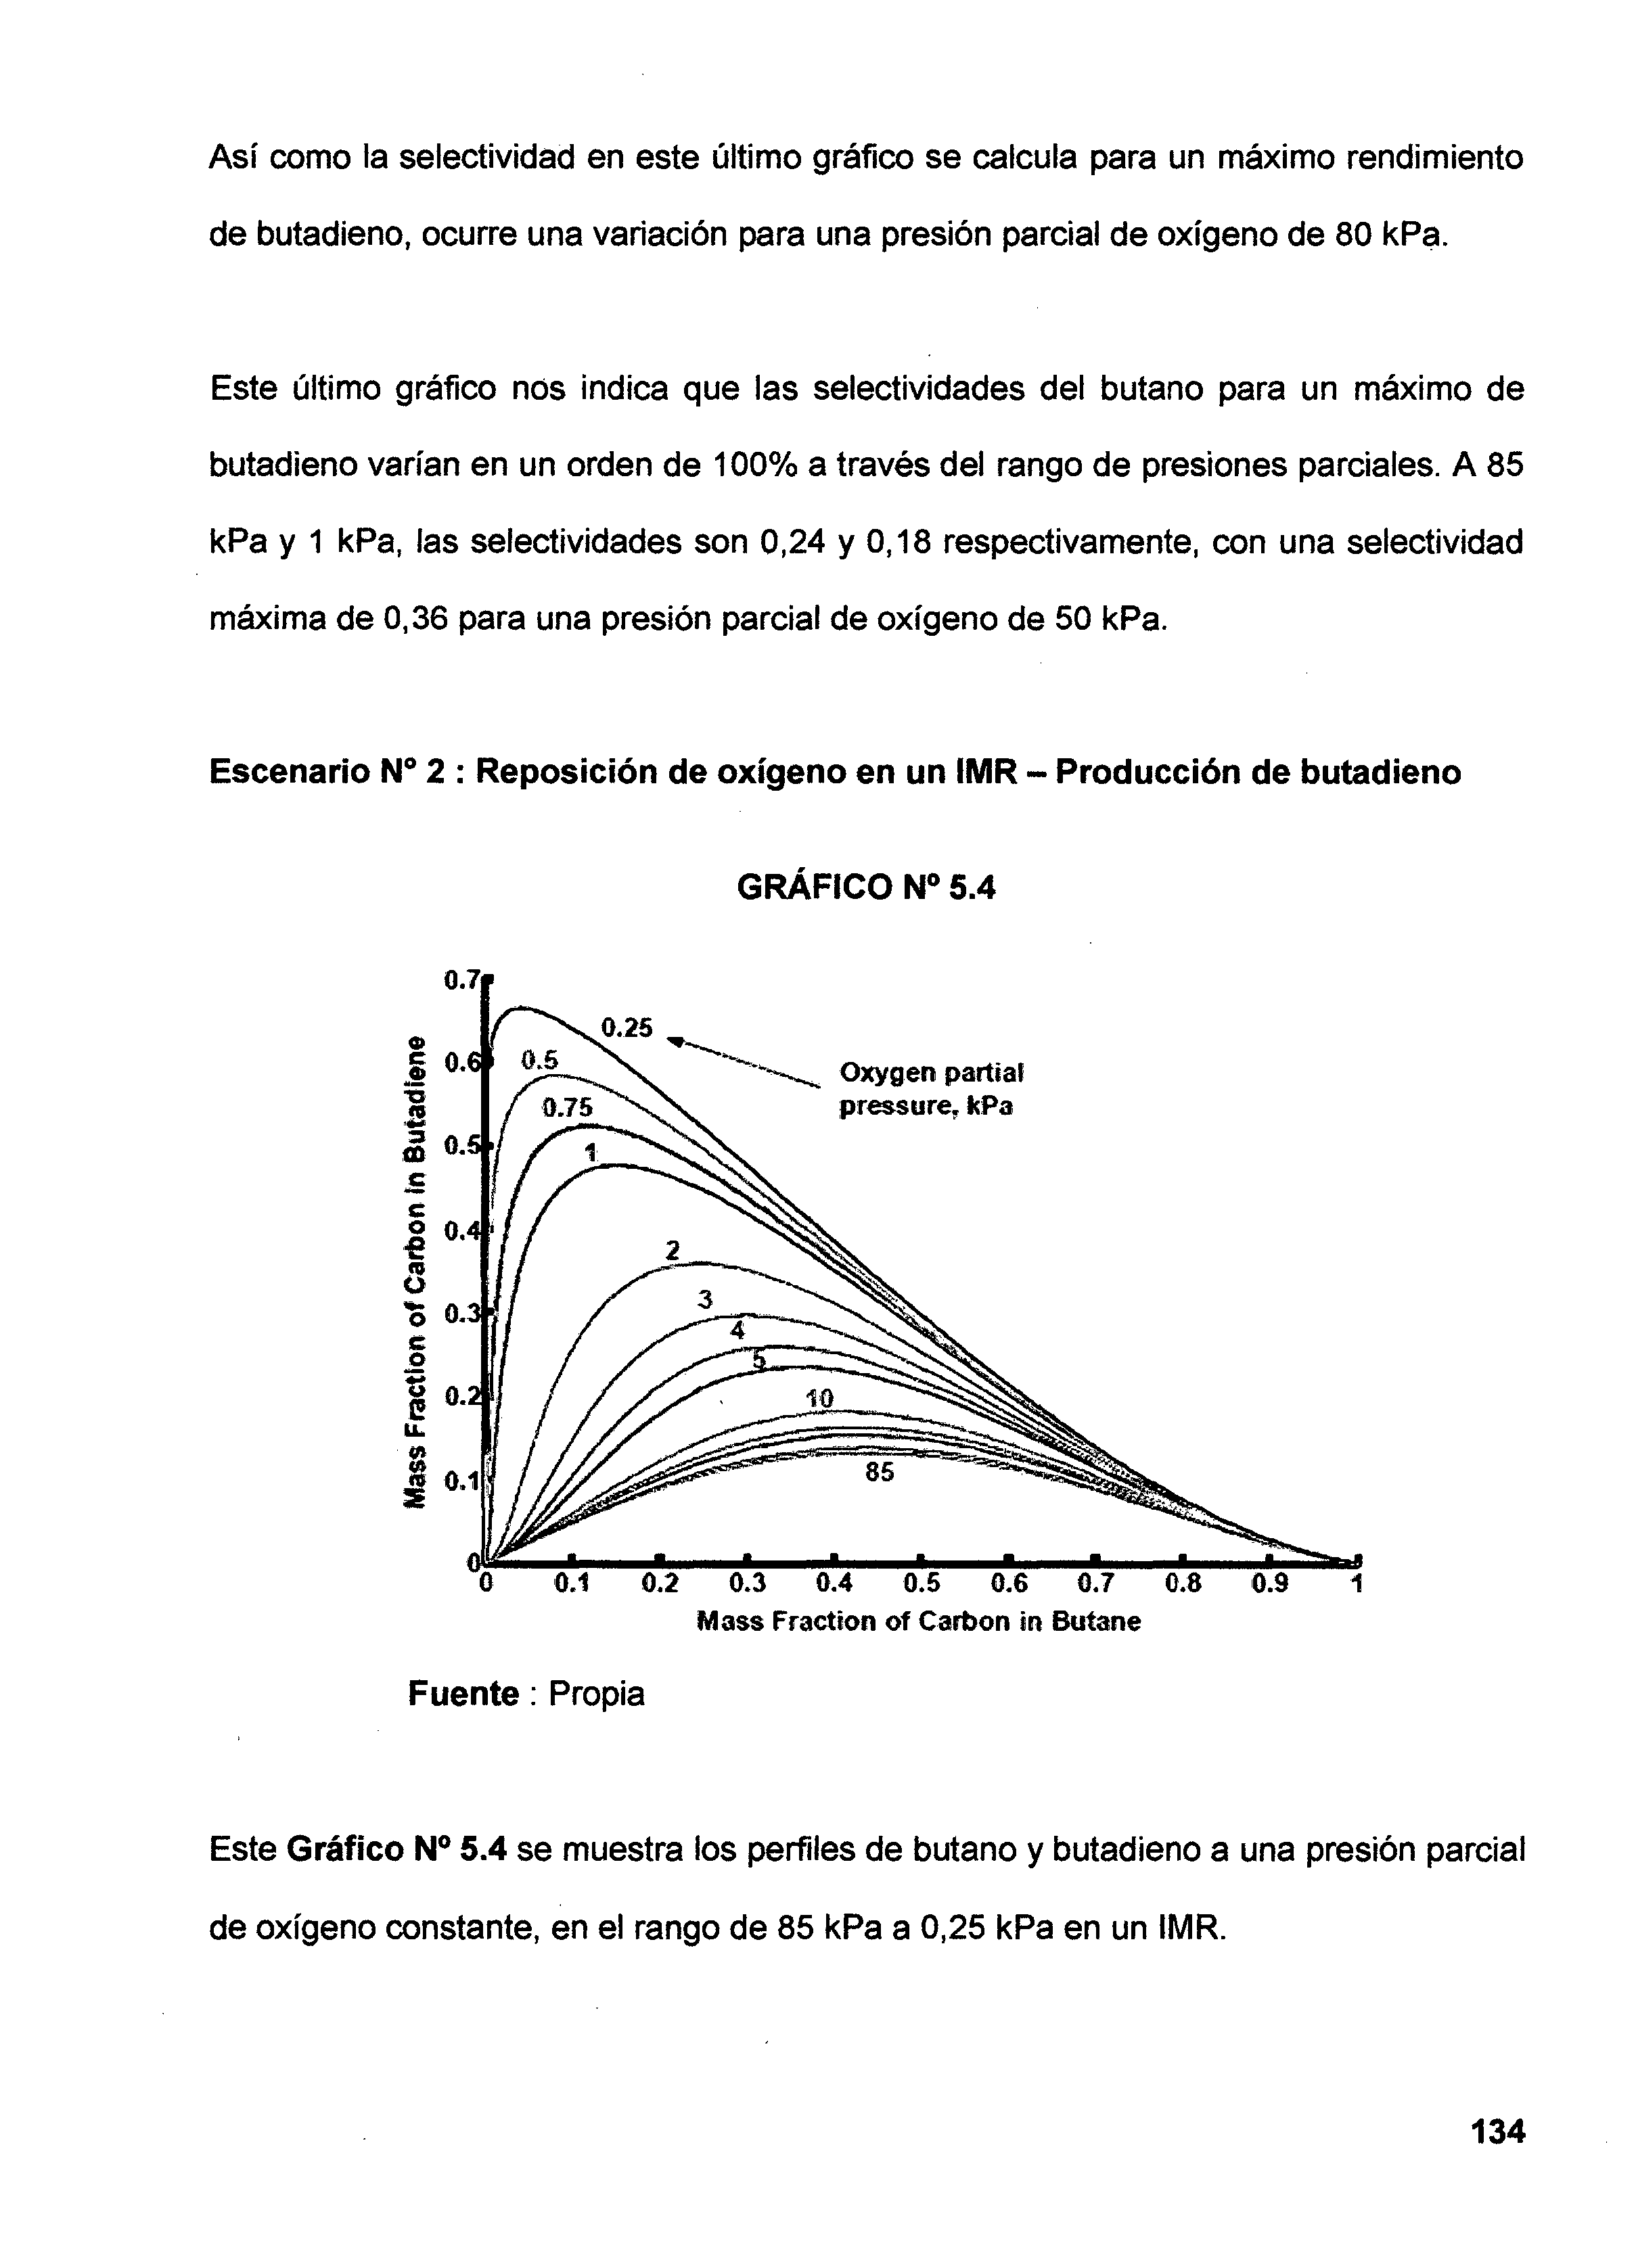 Así como la selectividad en este último gráfico se calcula para un máximo rendimiento de butadieno, ocurre una variación para una presión parcial de oxígeno de 80 kpa.